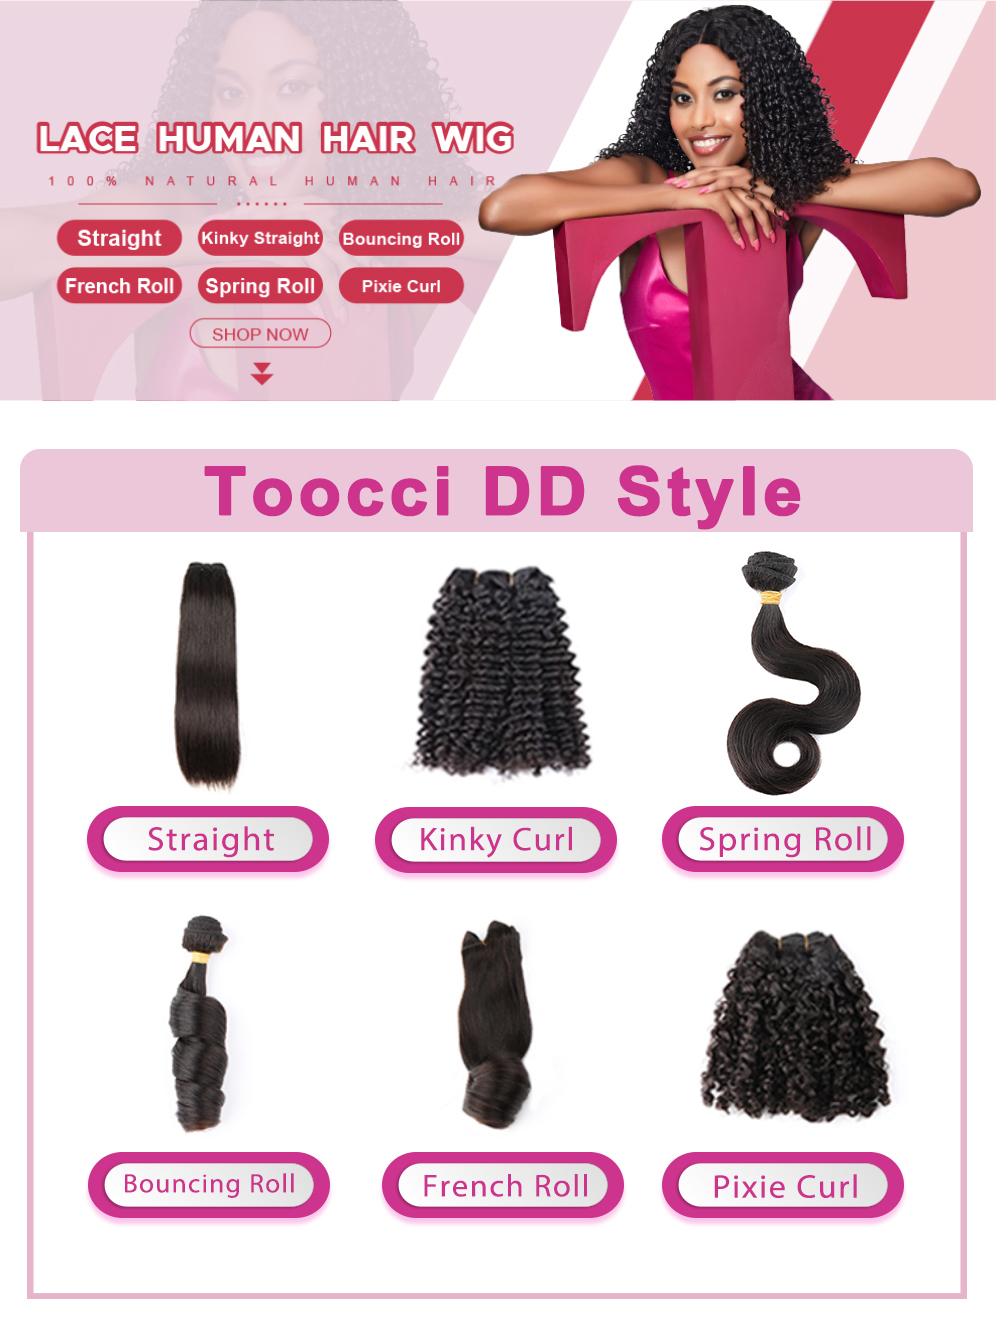 Bliss Toocci DD Super Double Drawn Straight Hair Hair Weave 10A Virgin Peruvian Human Hair 6